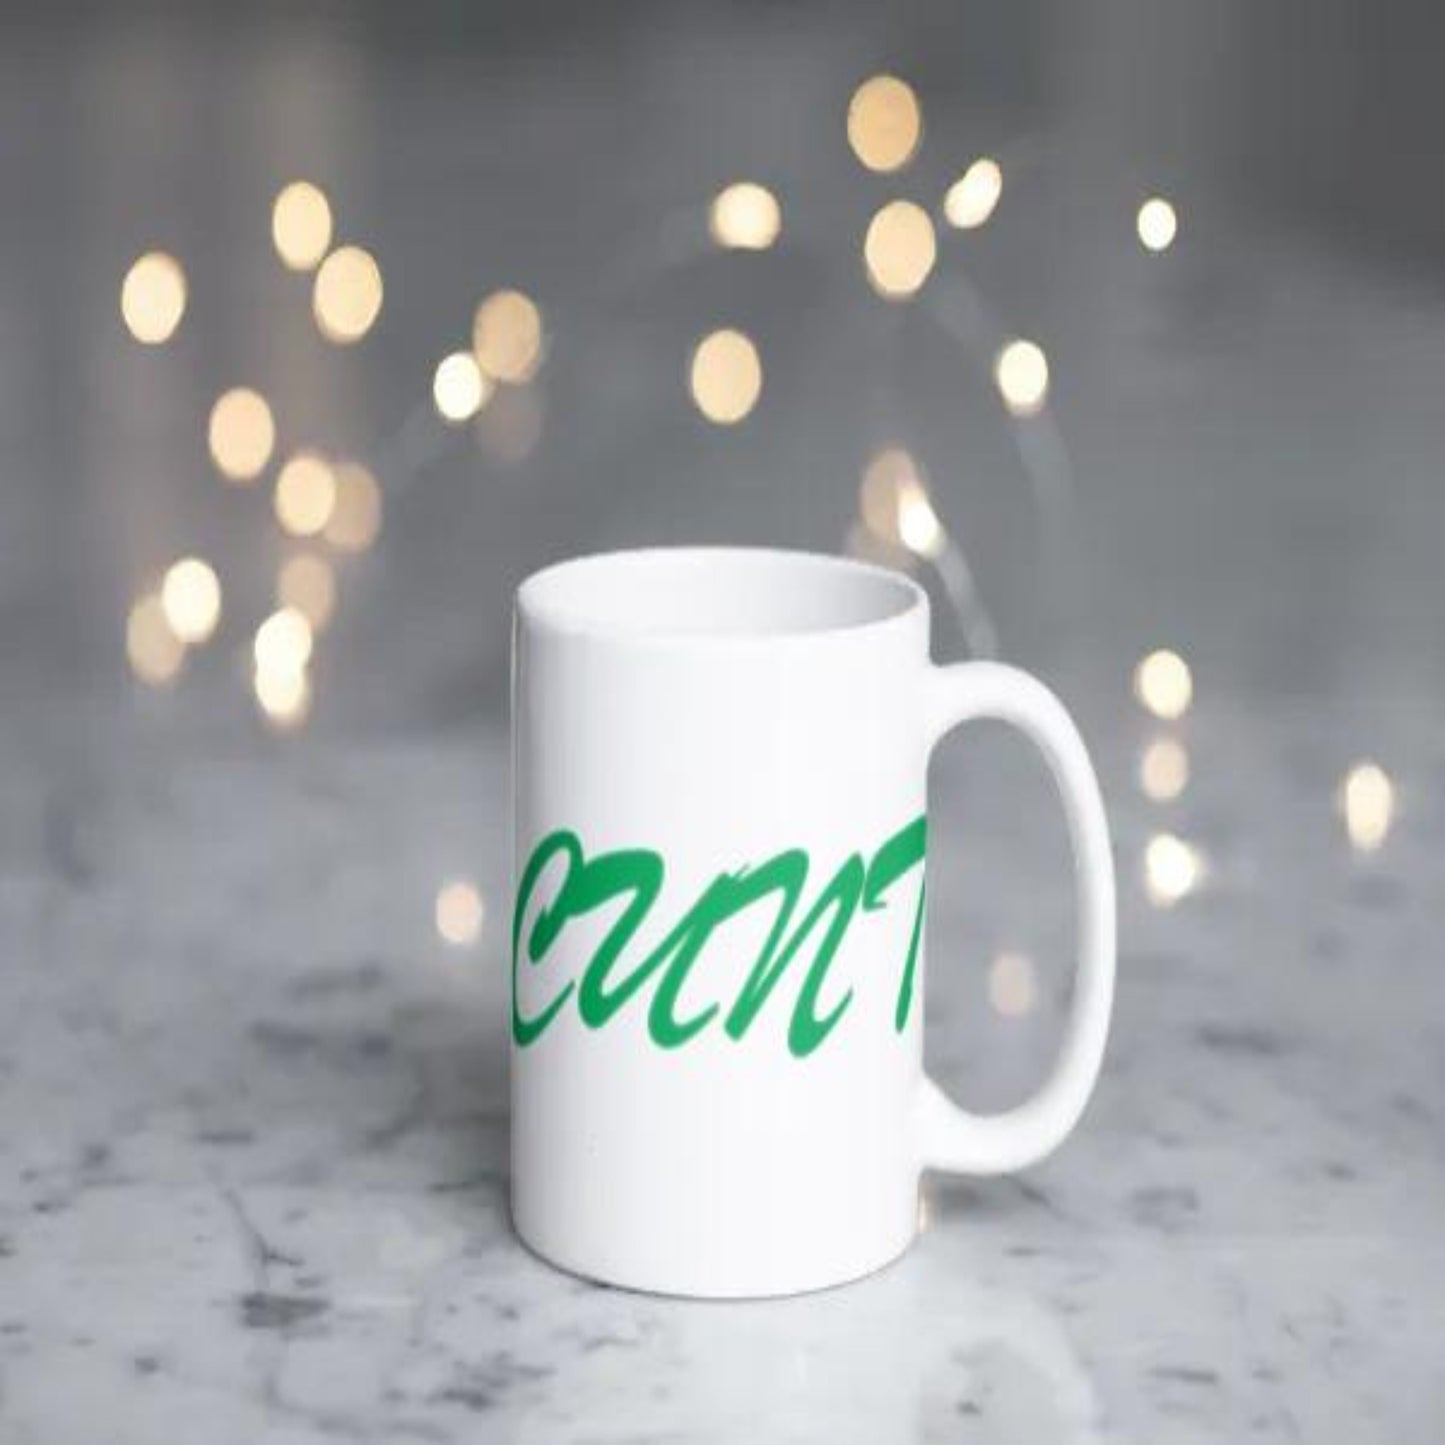 Cunt coffee mug. Green